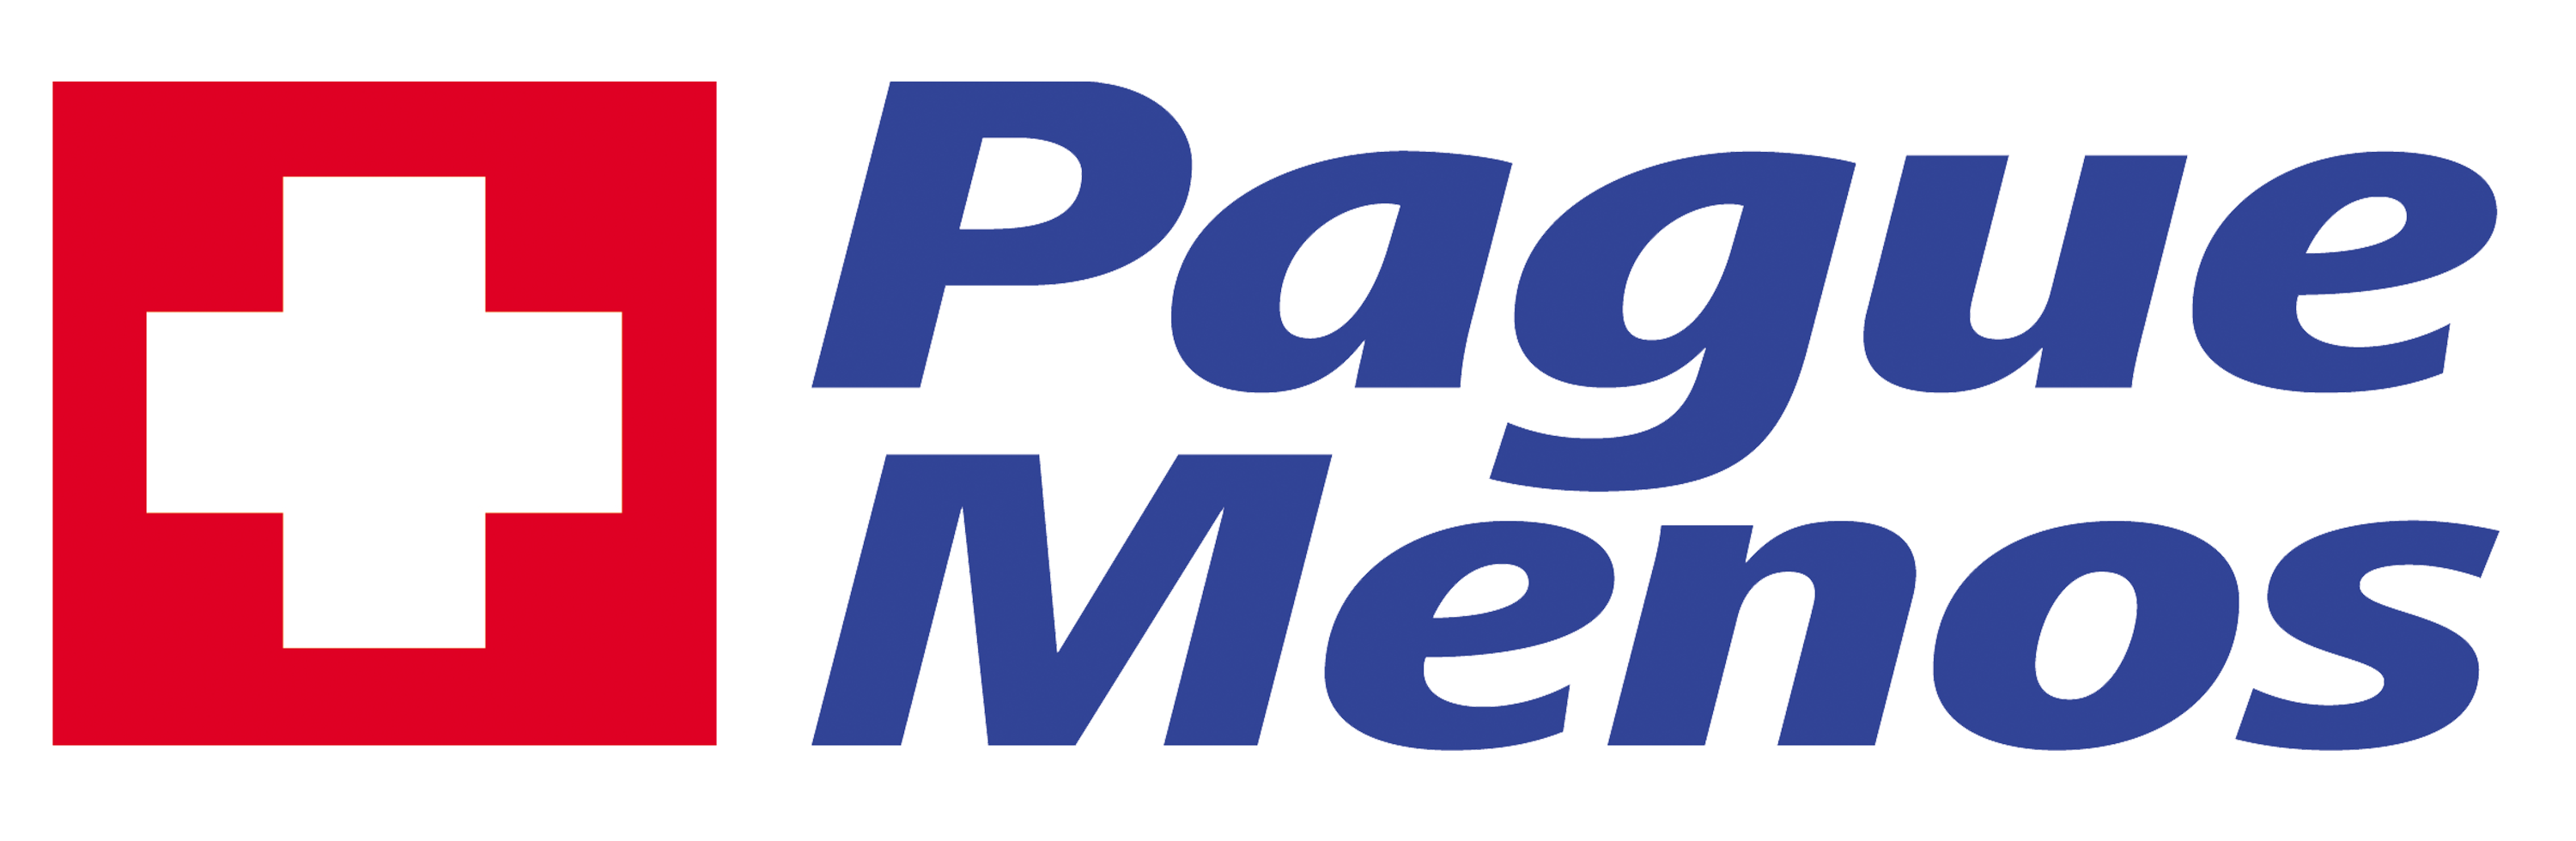 Farmacia Pague Menos - Marcelo Pires - MS